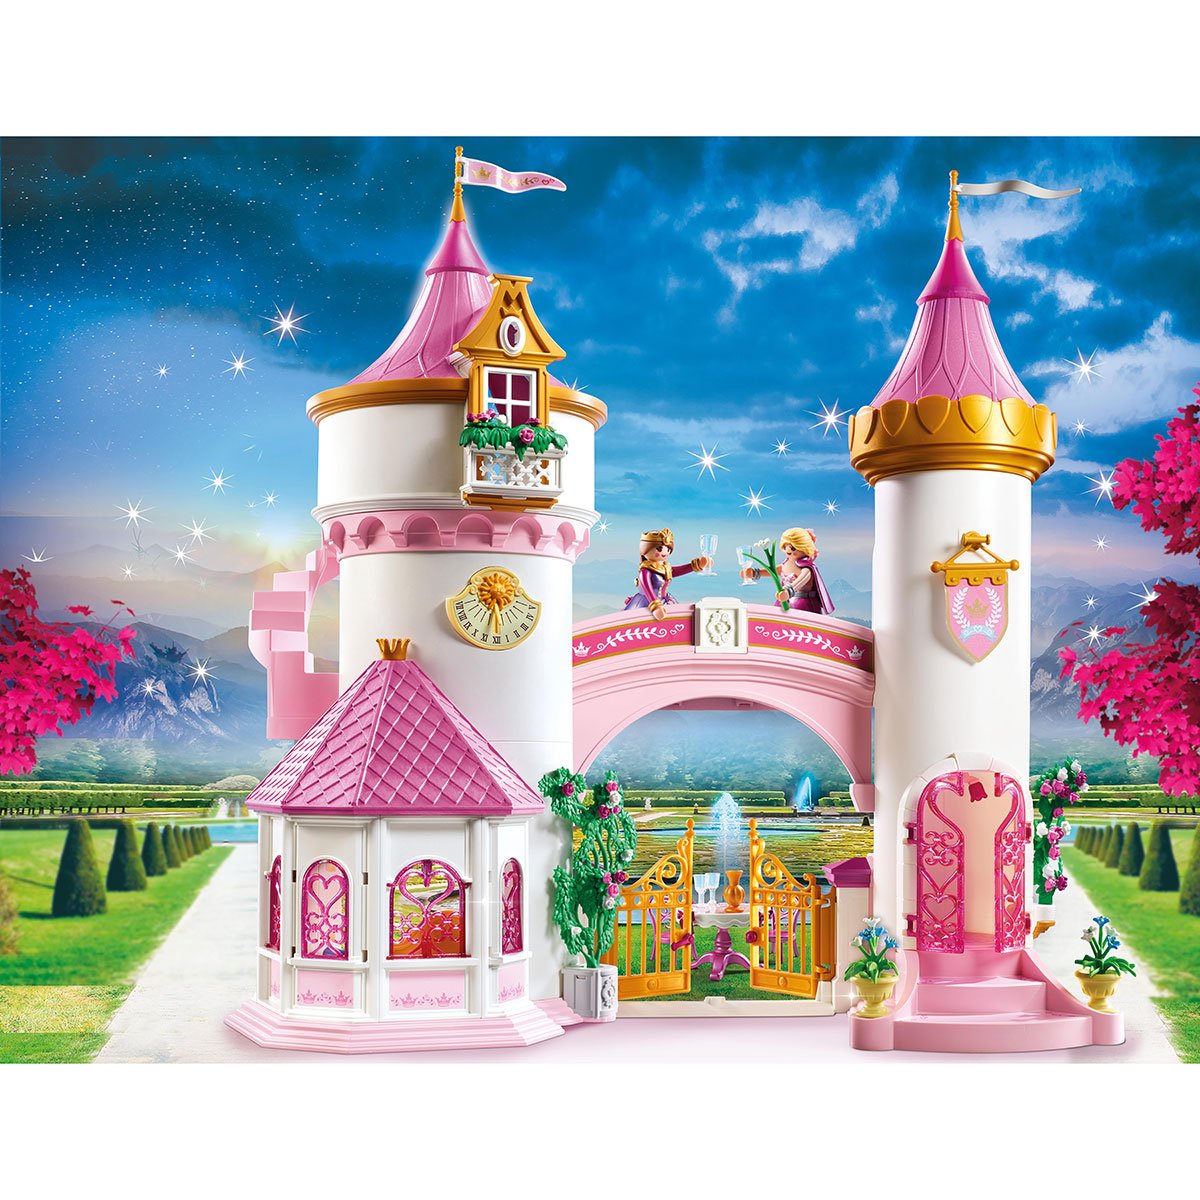 Palais de Princesse Playmobil Princess 70448 - La Grande Récré